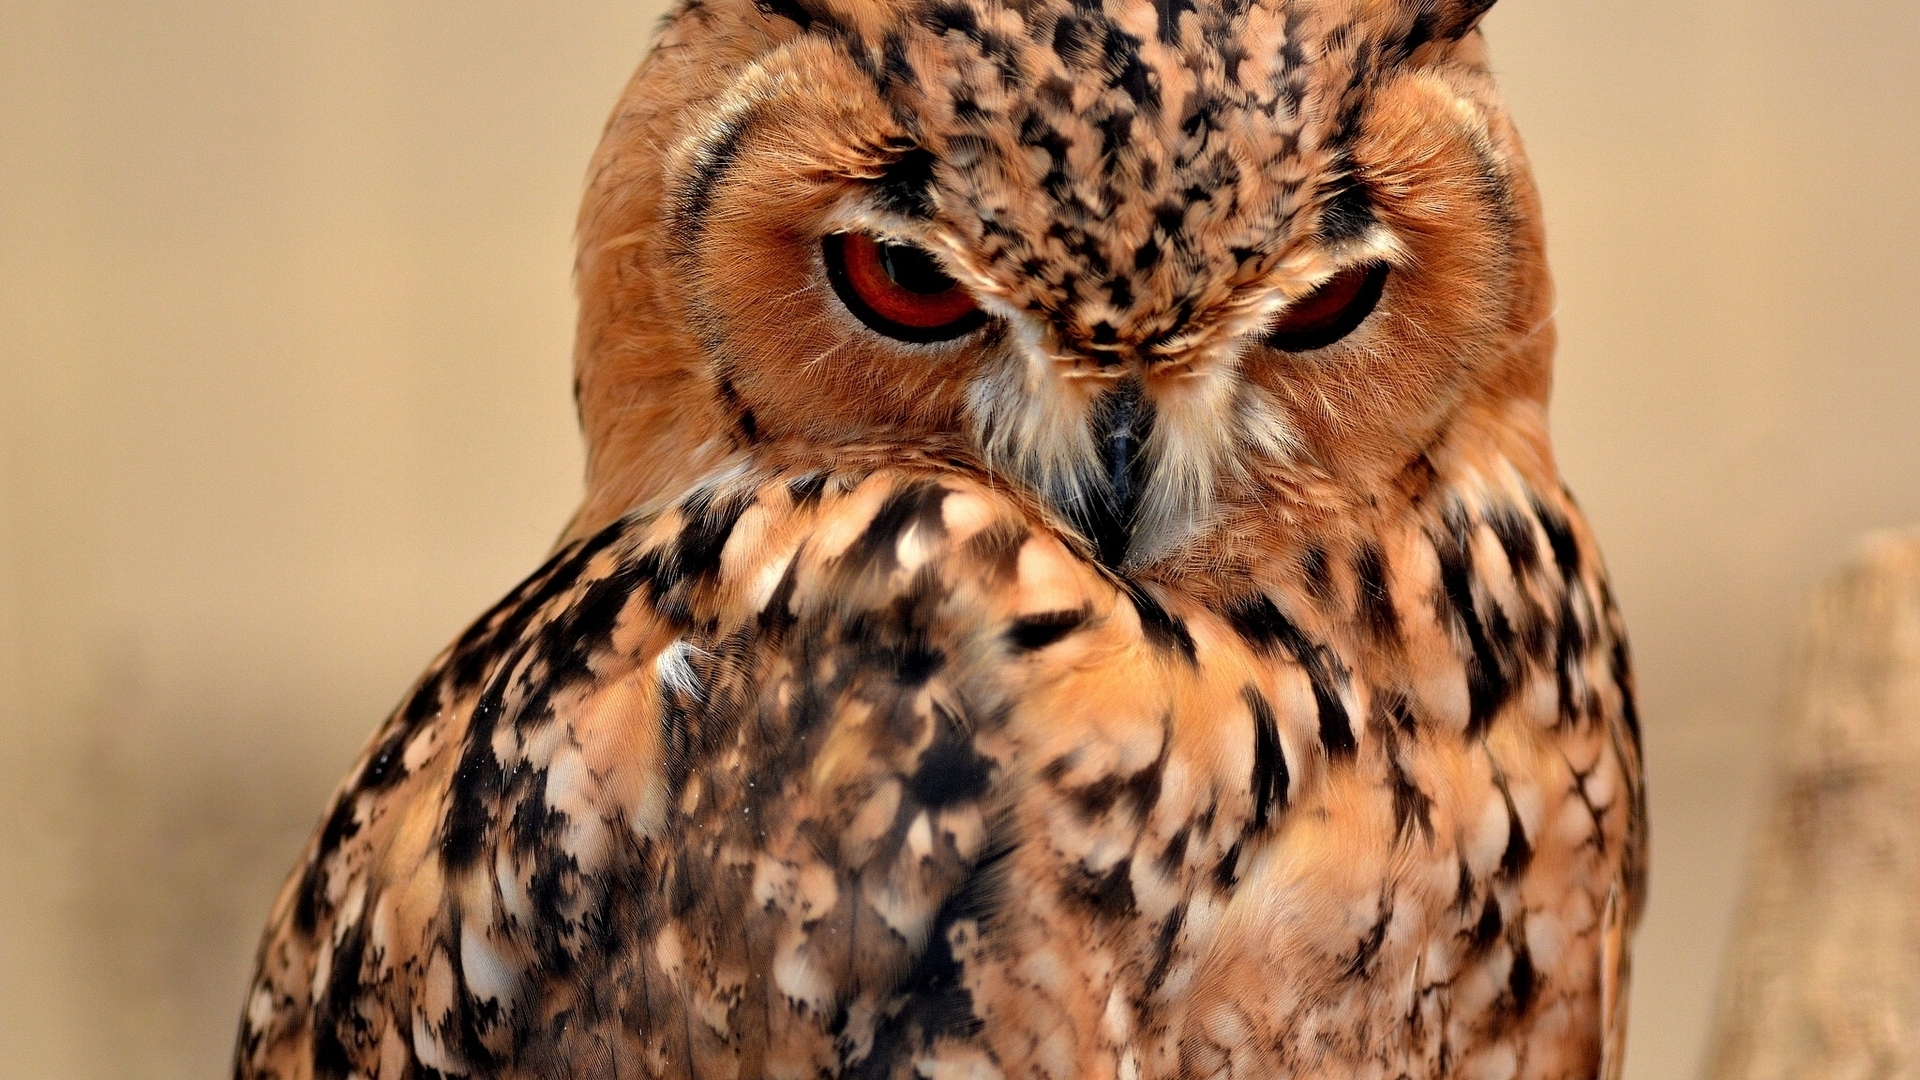 Desert Eagle Owl for 1920 x 1080 HDTV 1080p resolution